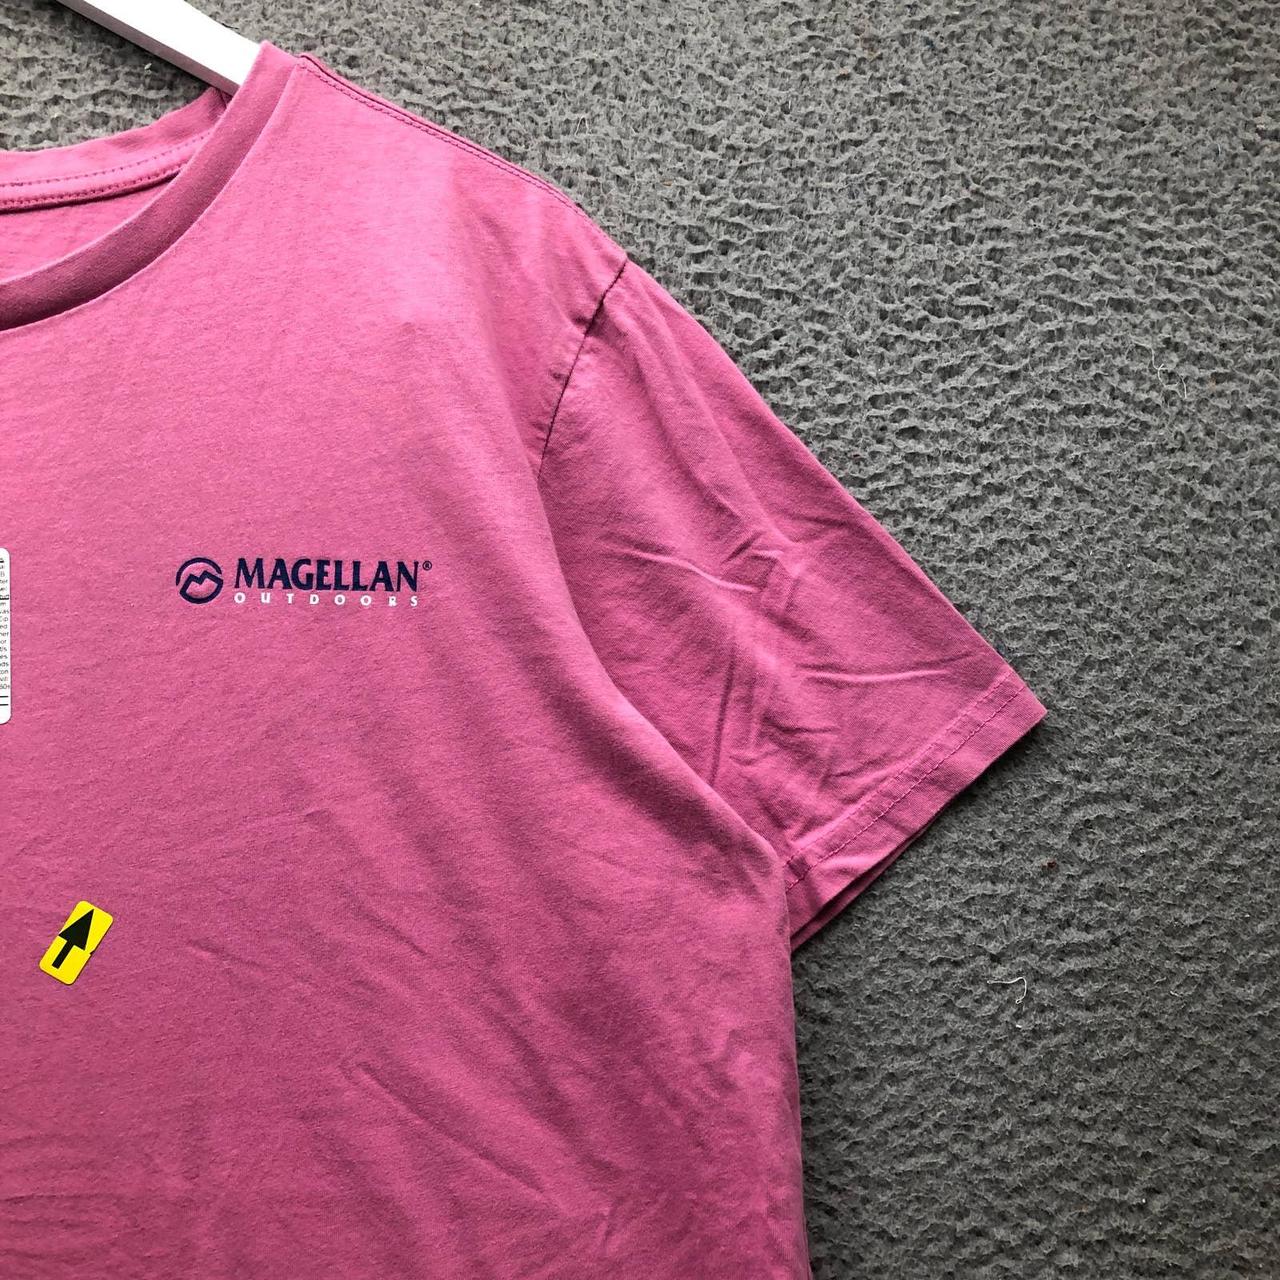 Magellan Outdoor T-Shirt Men's Size XL Short Sleeve - Depop